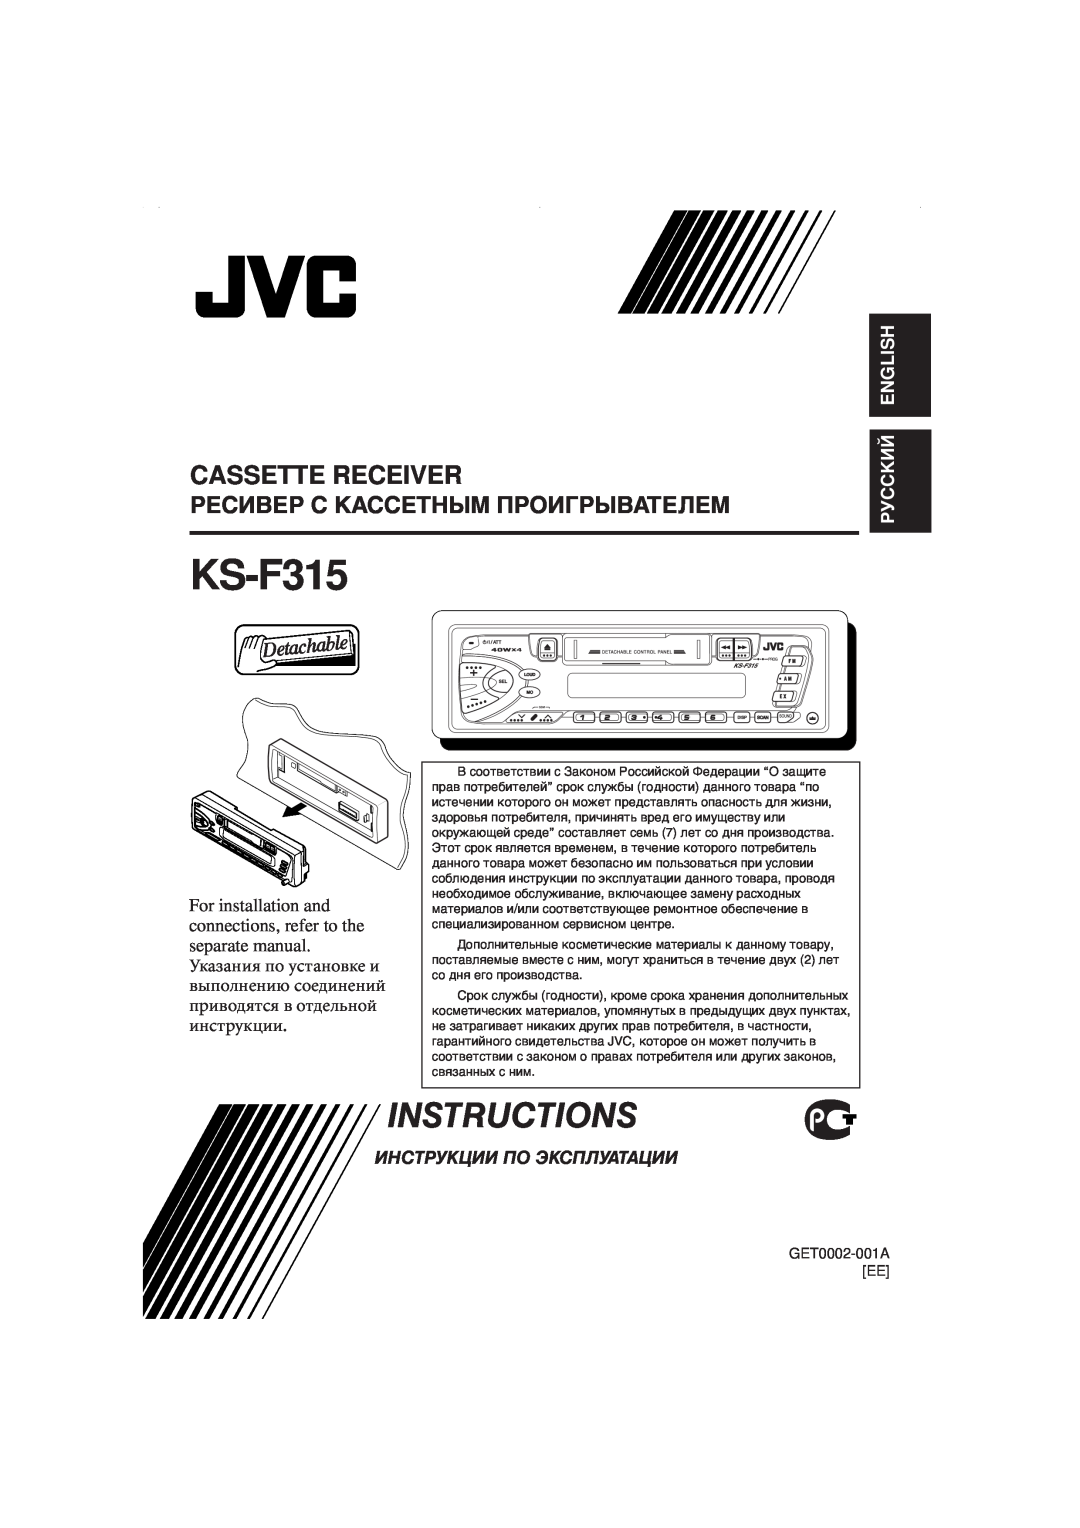 JVC KS-F315EE manual Instructions, Cassette Receiver, Ресивер С Кассетным Проигрывателем, Инструкции По Эксплуатации 